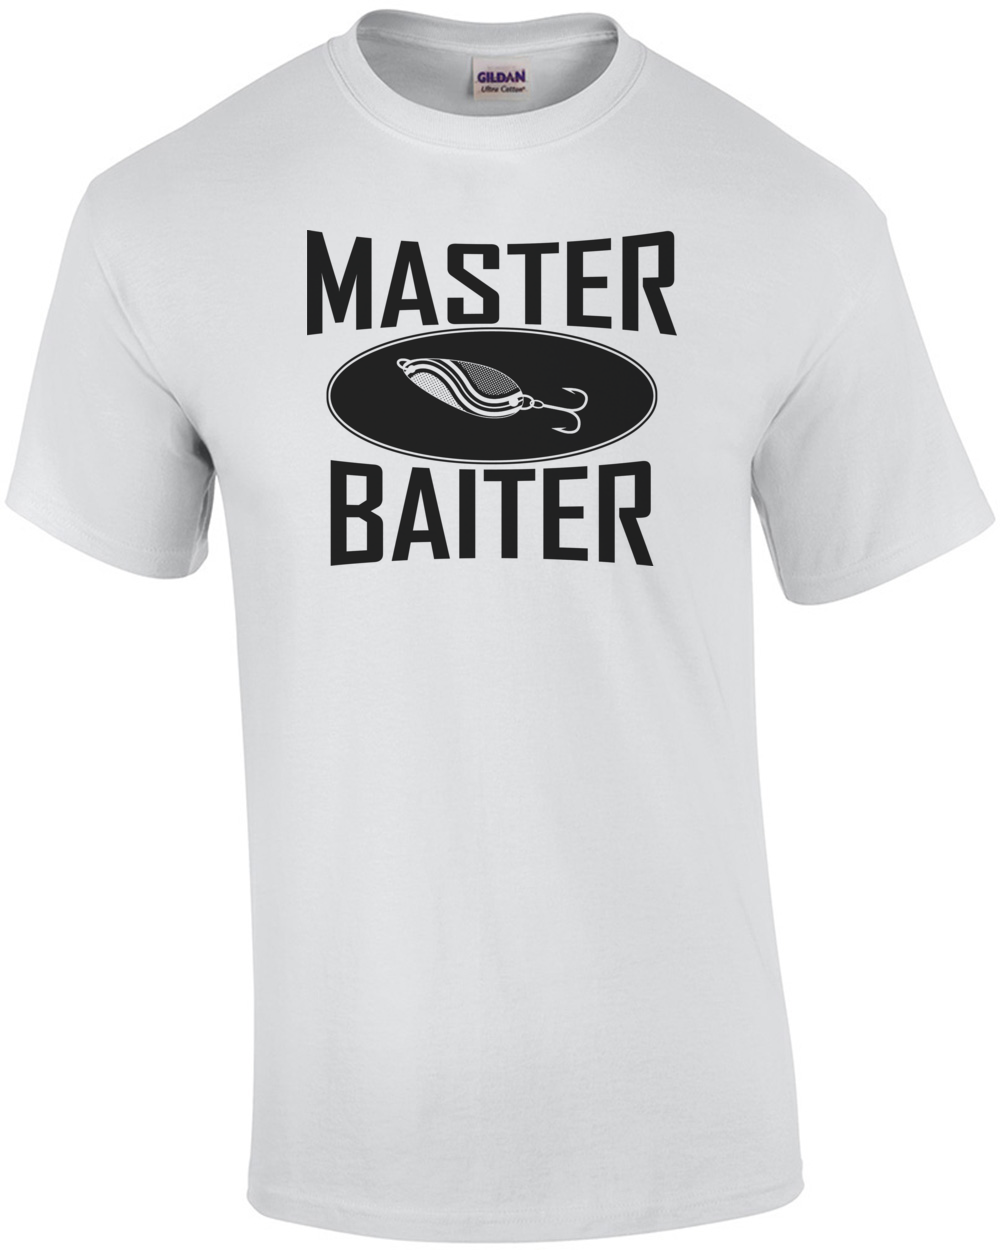 https://www.betterthanpants.com/media/catalog/product/m/a/master-baiter-shirt-mens-regular-white_1.png